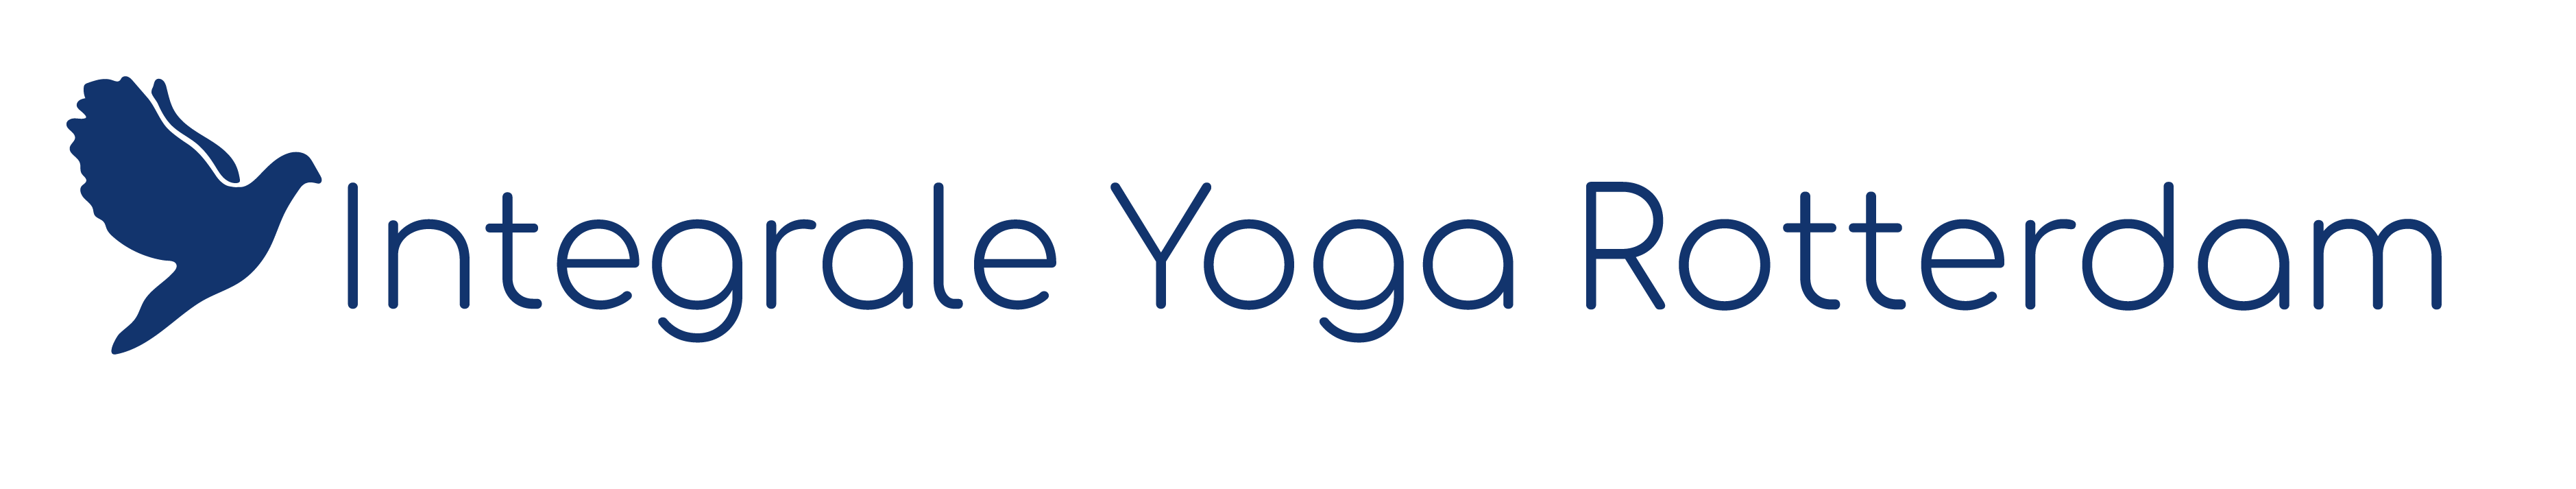 Centrum voor Integrale Yoga